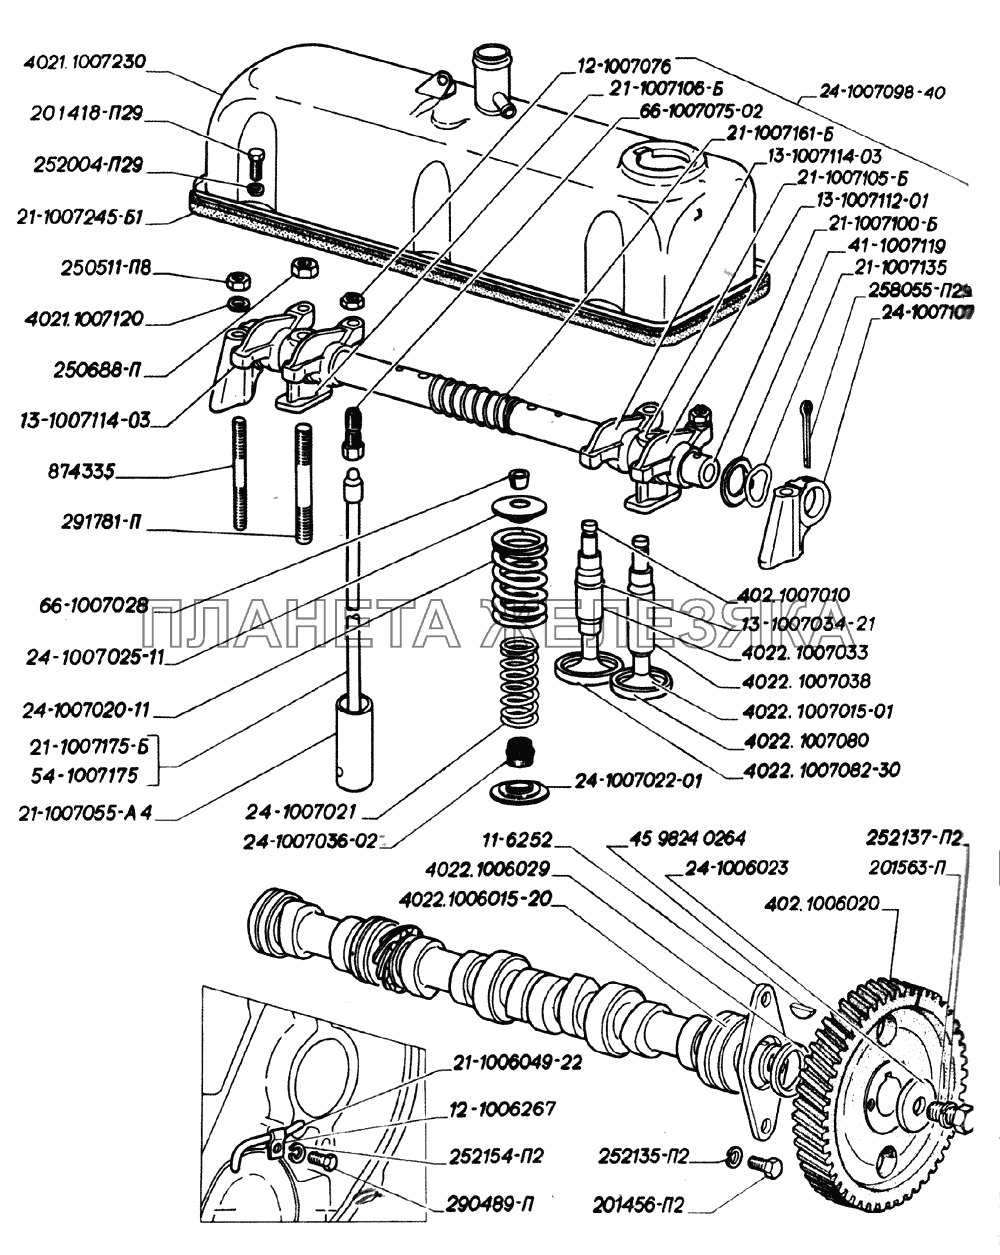 Вал распределительный, ось коромысел, клапаны и толкатели клапанов, крышка коромысел двигателей ЗМЗ-402 ГАЗ-2705 (дв. УМЗ-4215)